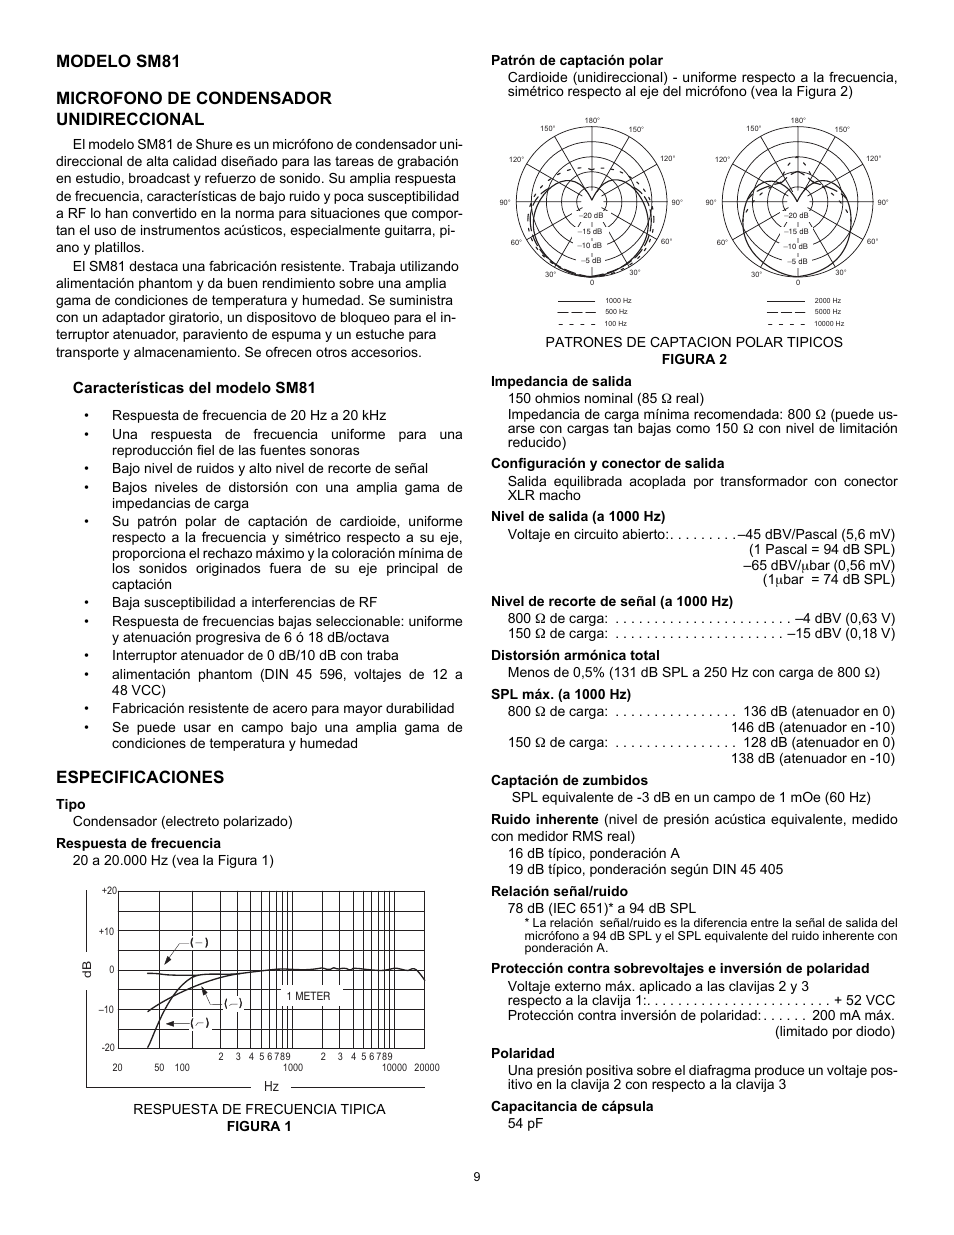 Especificaciones, Características del modelo sm81 | Shure SM81 User Manual  | Page 9 / 20